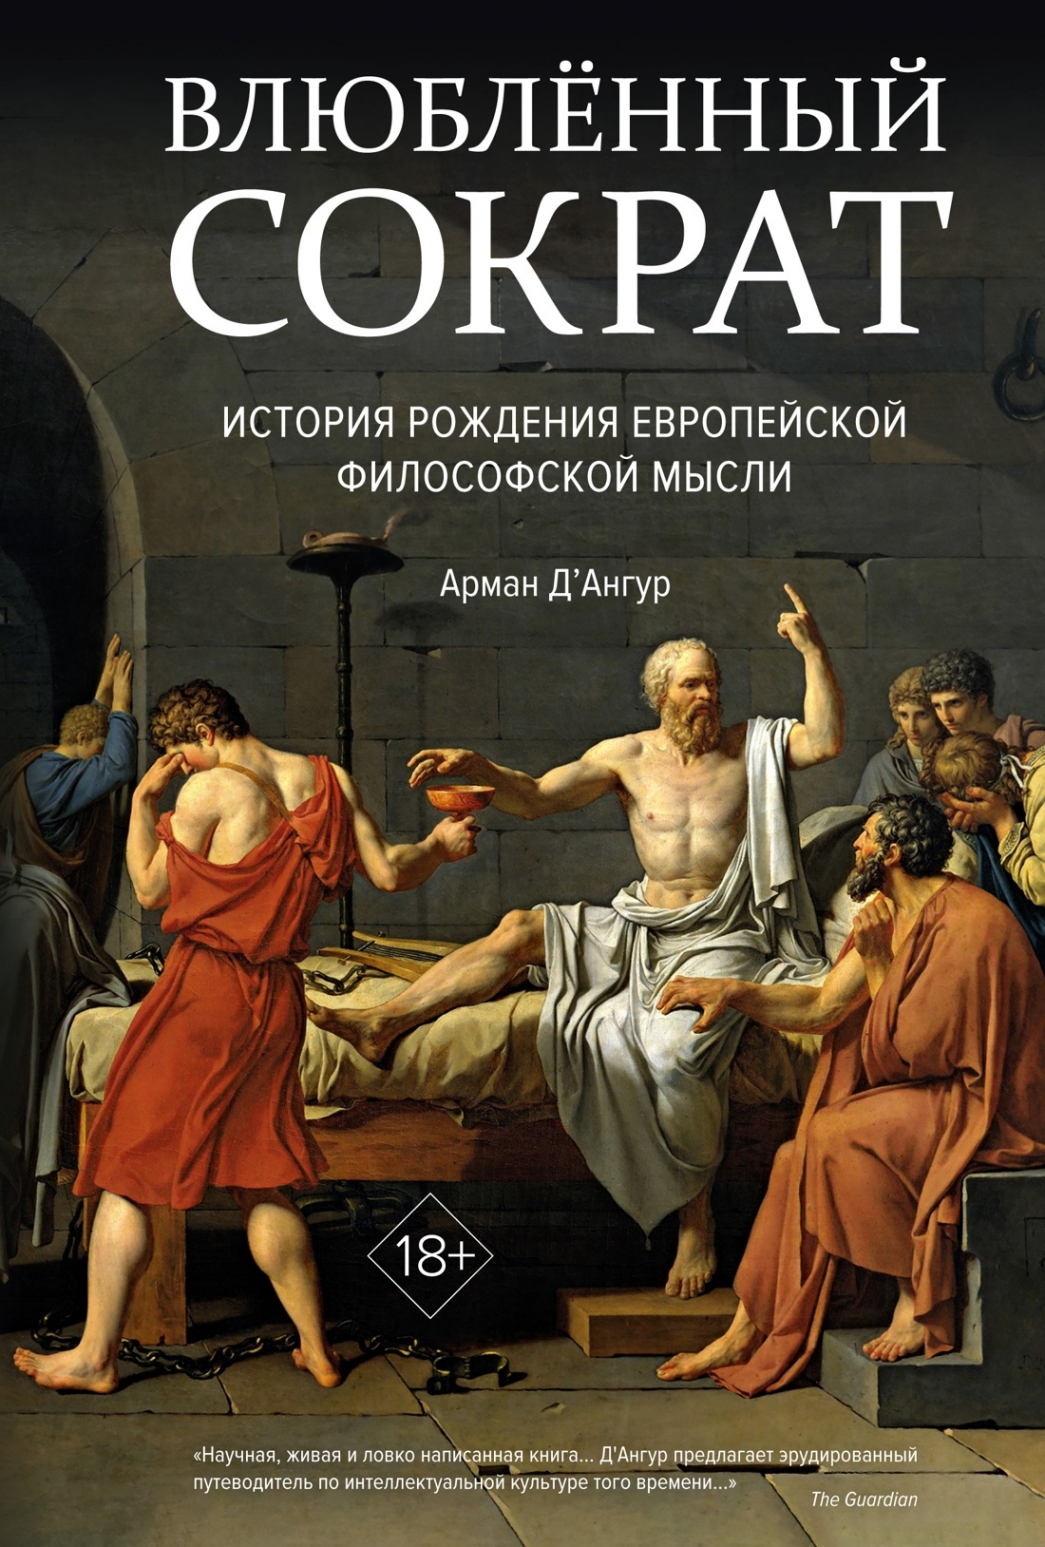 Д'Ангур А. Влюблённый Сократ. История рождения европейской философской мысли 